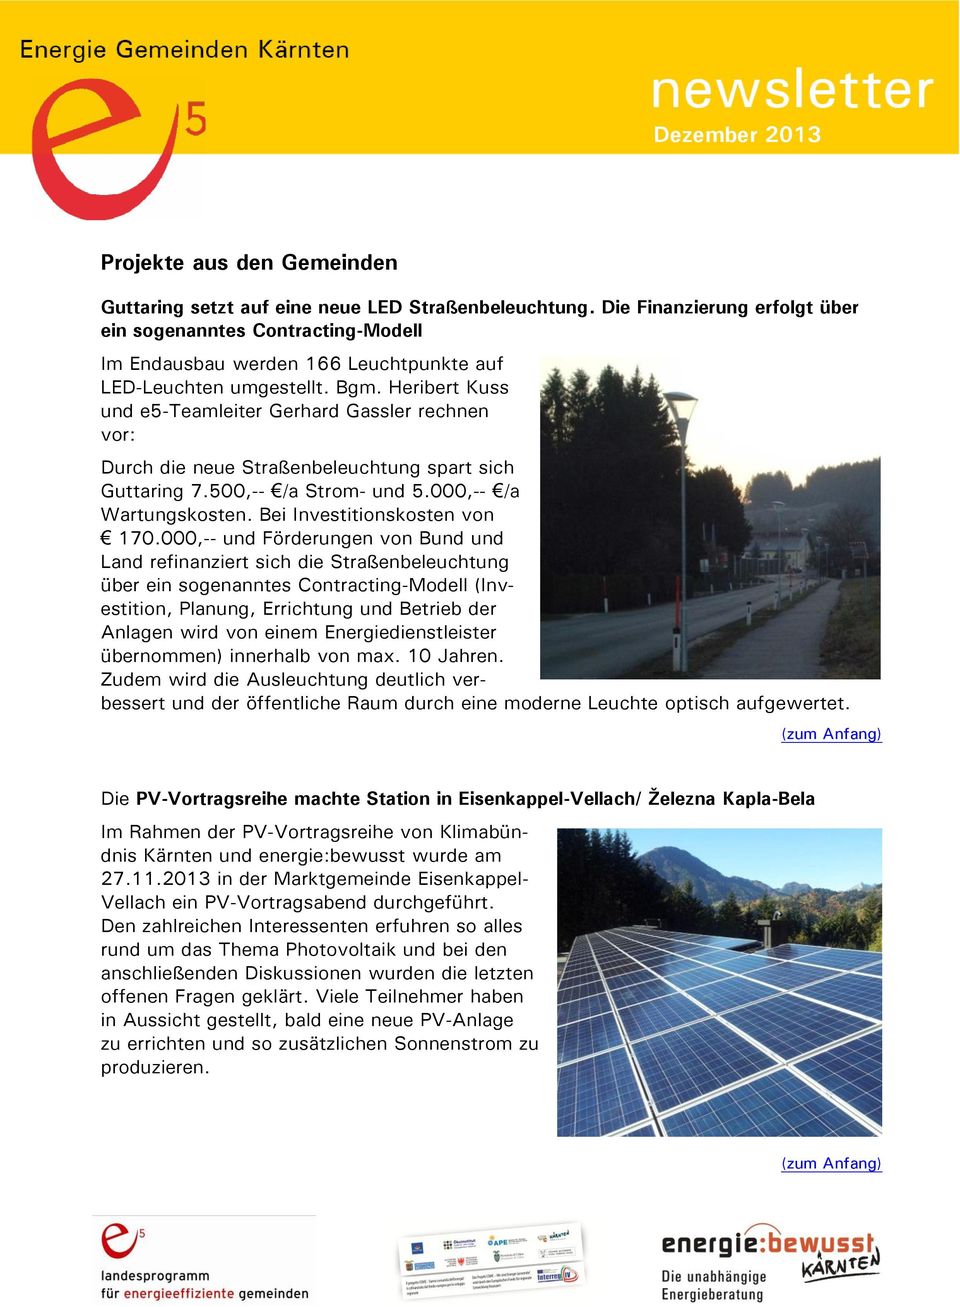 Heribert Kuss und e5-teamleiter Gerhard Gassler rechnen vor: Durch die neue Straßenbeleuchtung spart sich Guttaring 7.500,-- /a Strom- und 5.000,-- /a Wartungskosten. Bei Investitionskosten von 170.